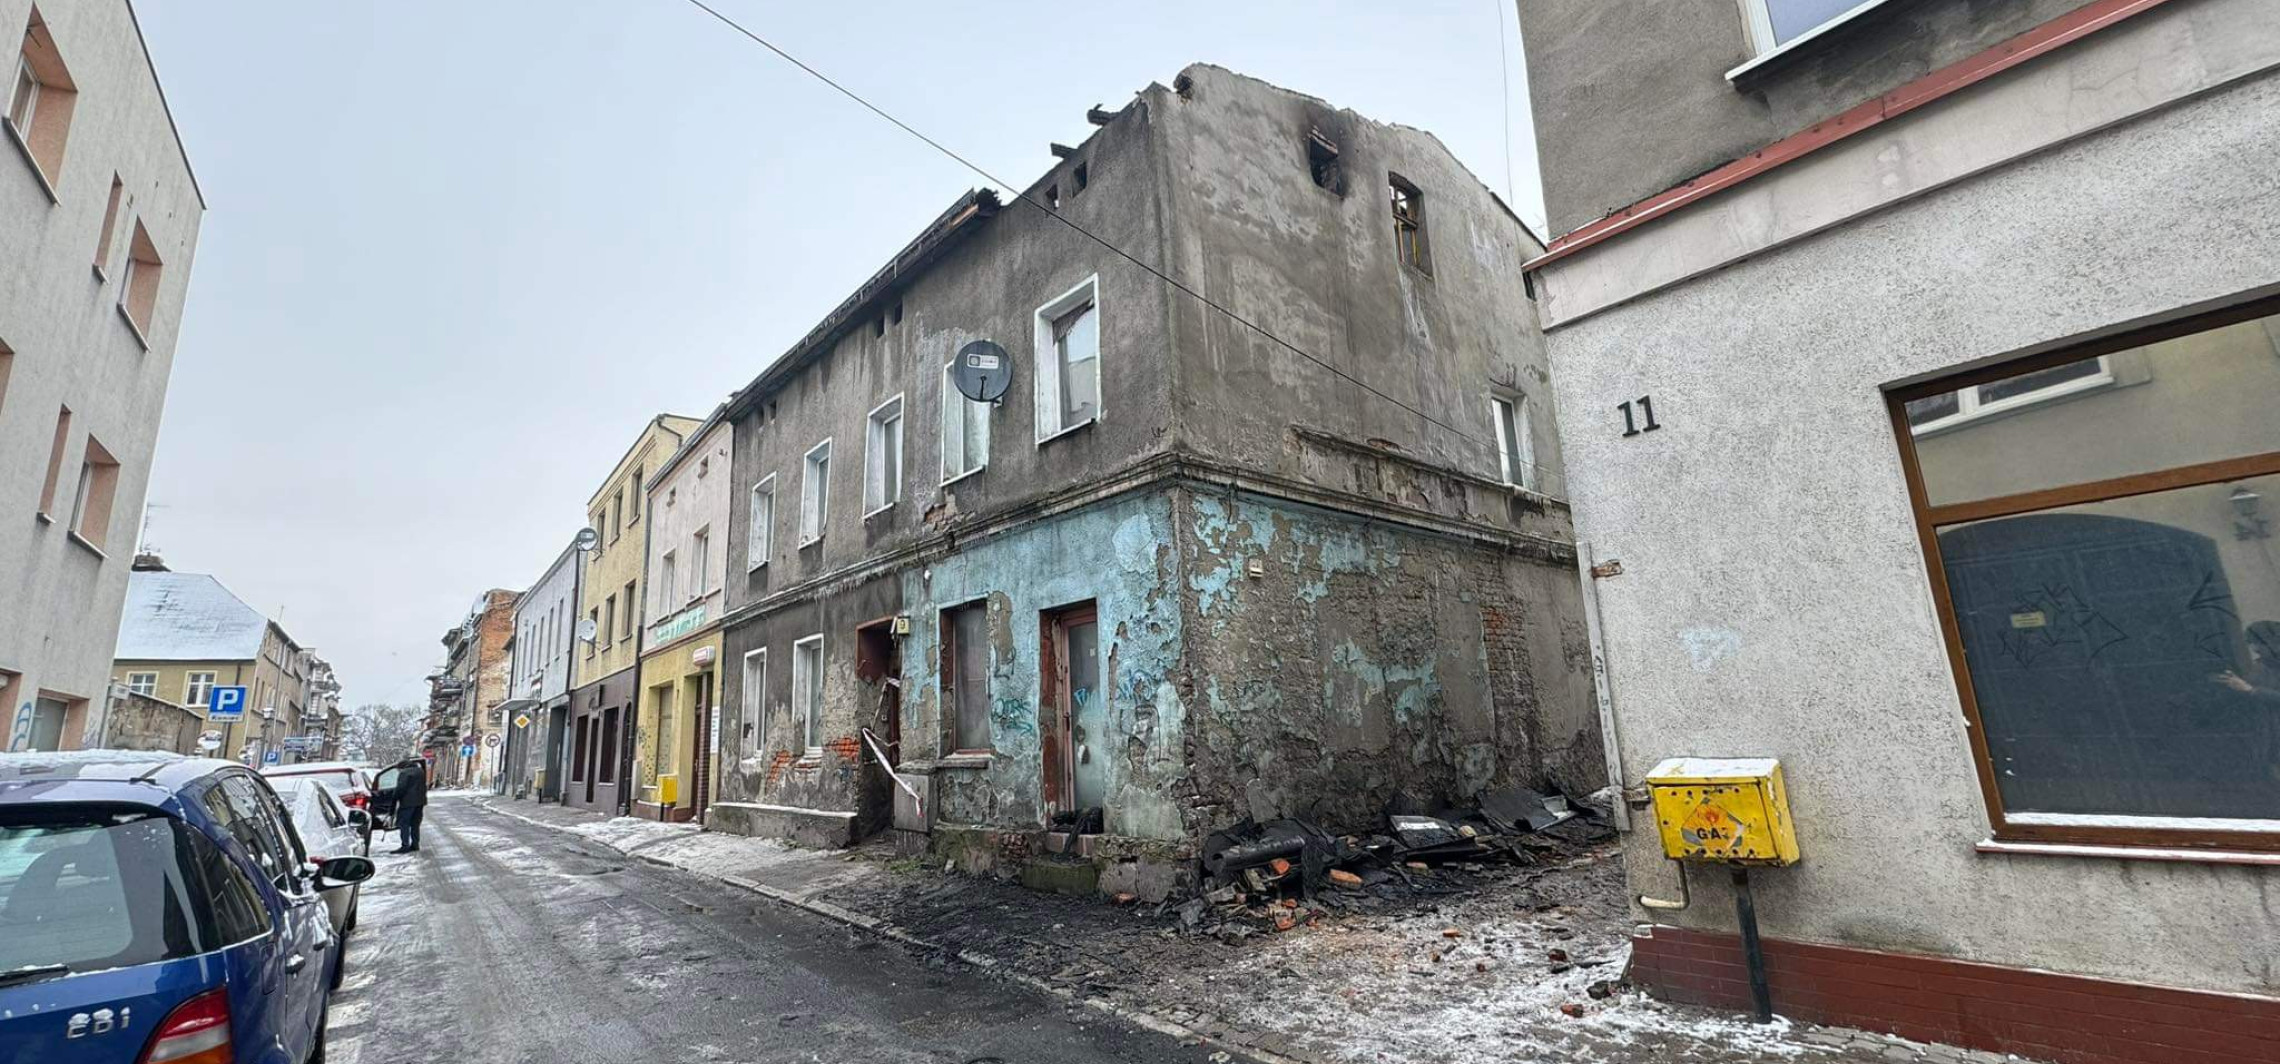 Inowrocław - W nocy palił się budynek w centrum miasta